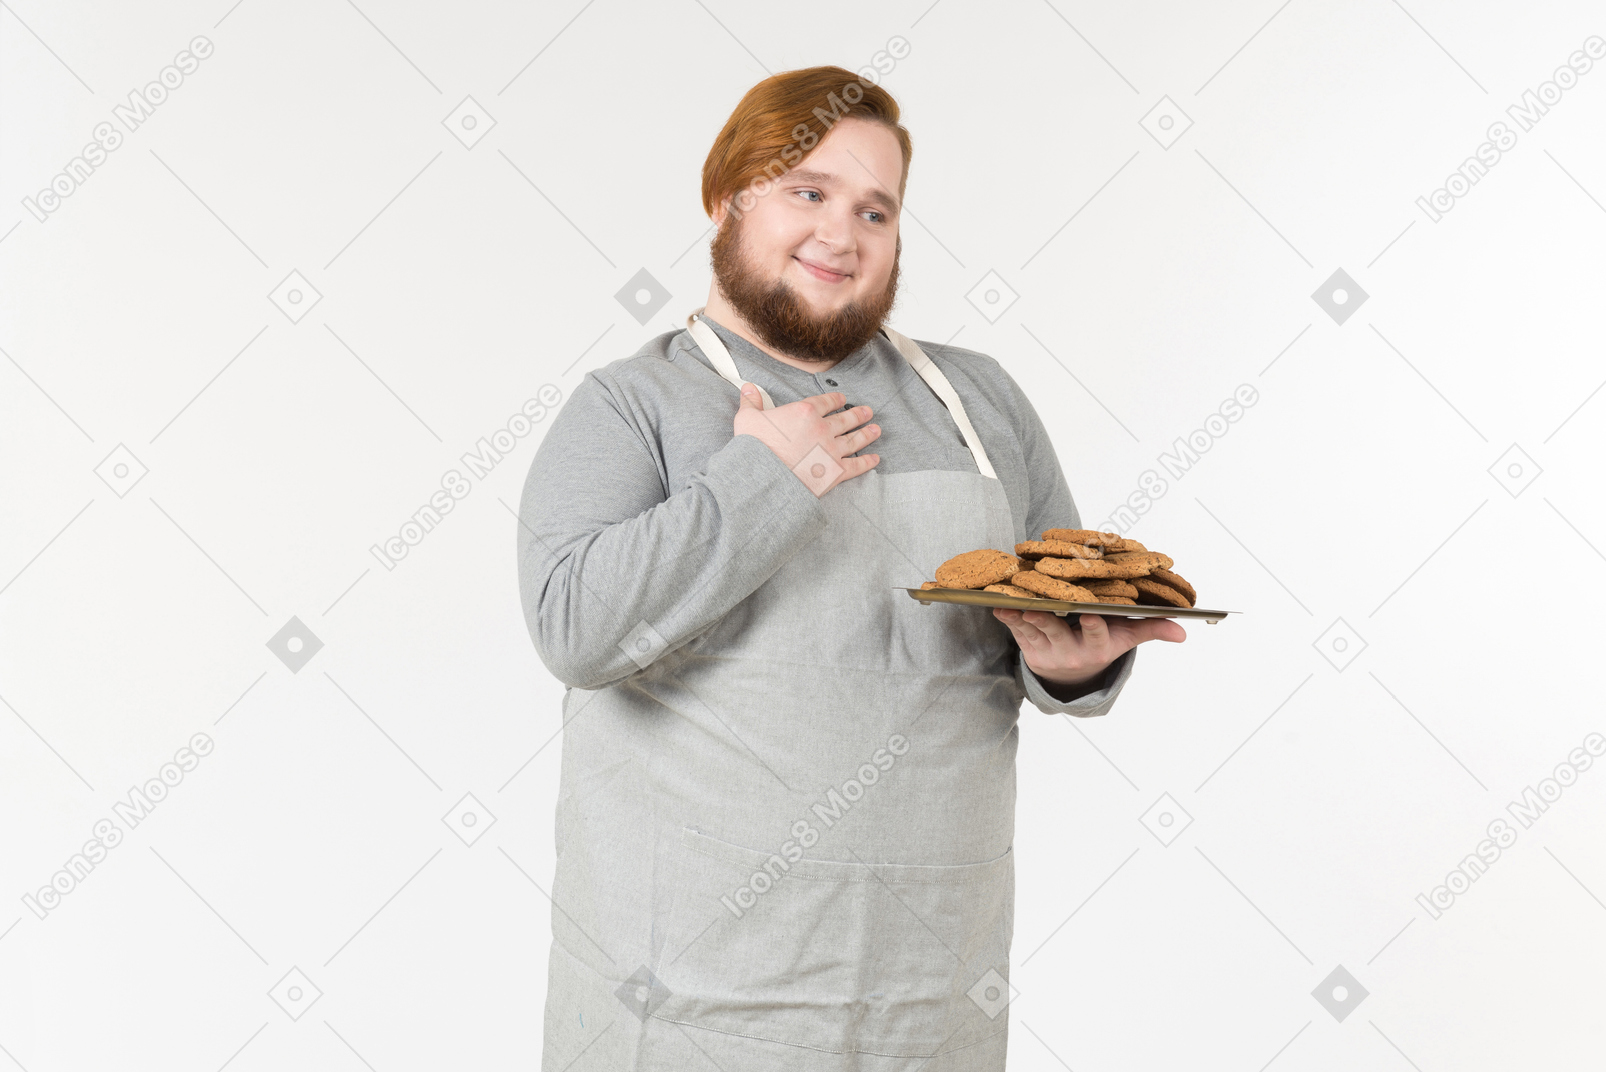 Un gros boulanger avec une assiette de biscuits qui semble heureux